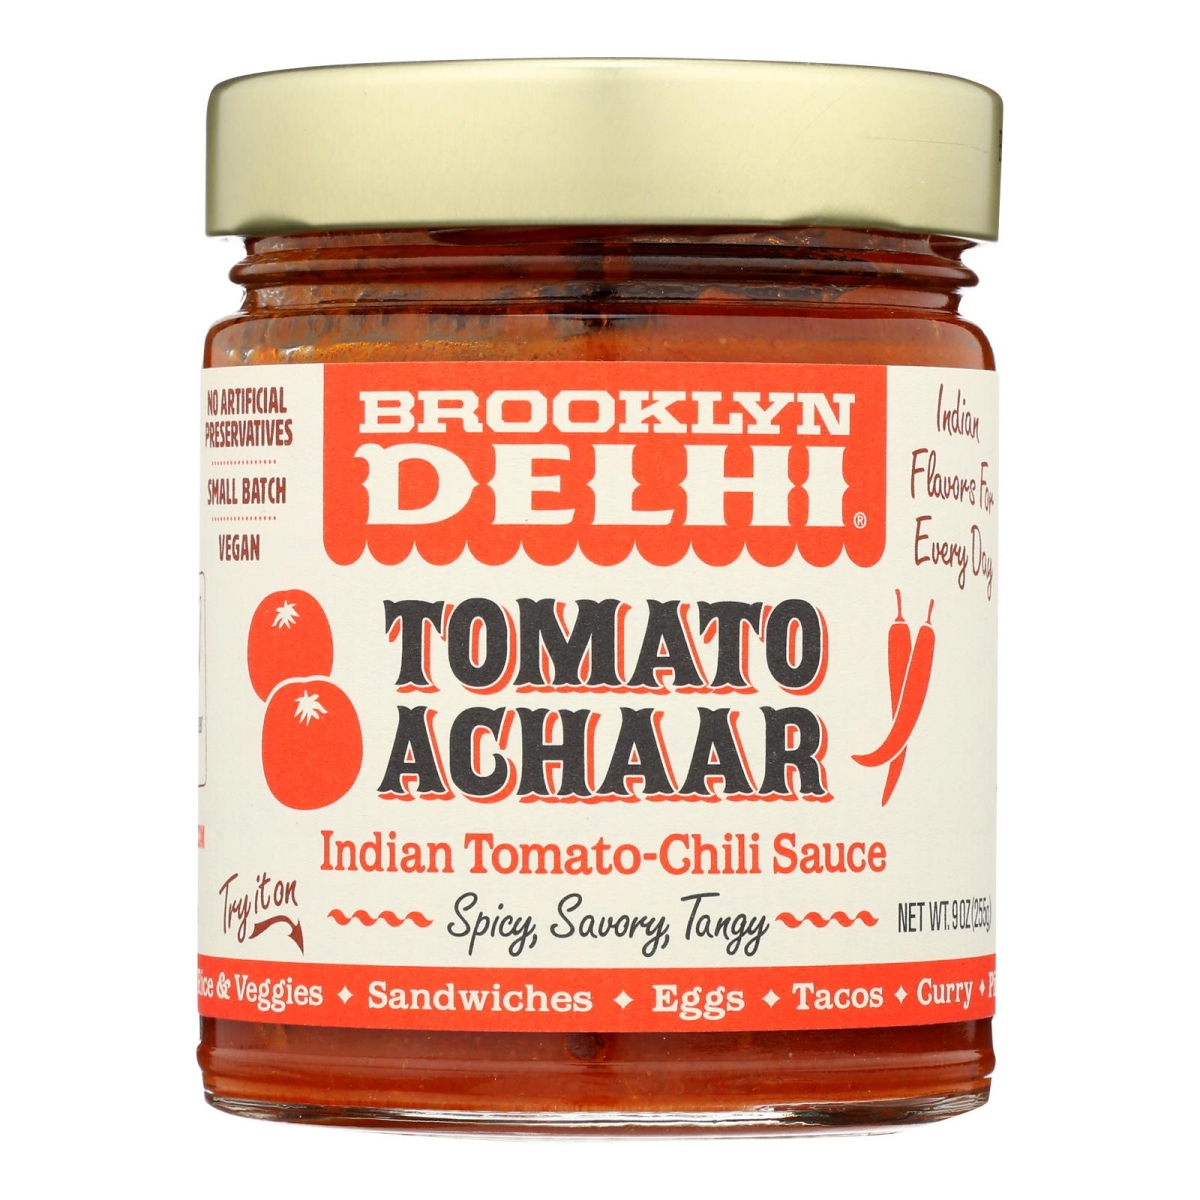 Picture of Brooklyn Delhi 2468312 9 oz Tomato Achaar Chili Sauce 